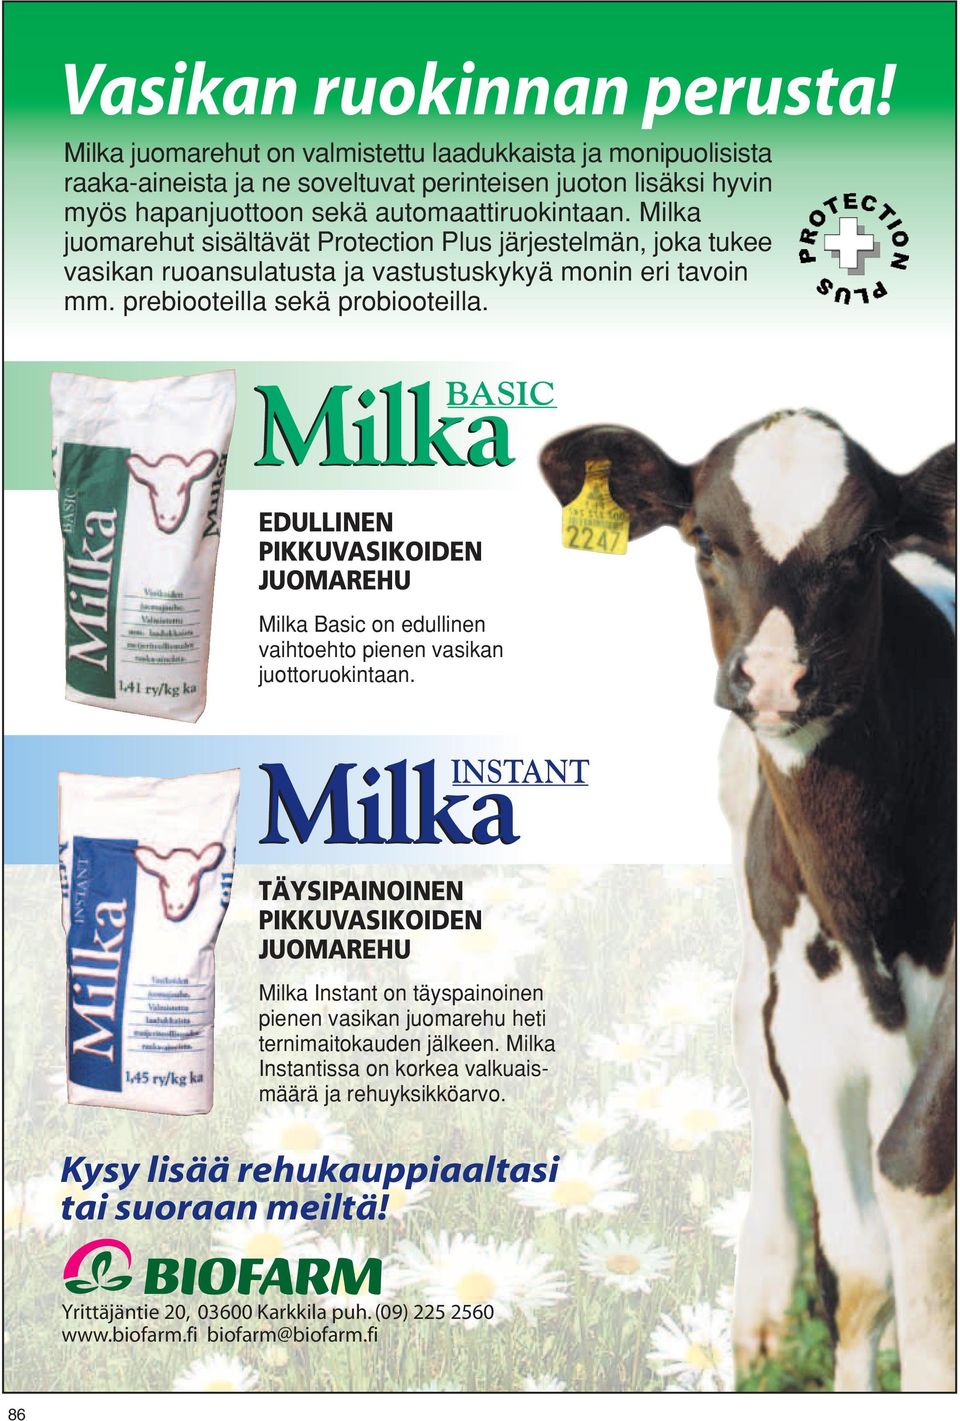 Milka BASIC EDULLINEN PIKKUVASIKOIDEN JUOMAREHU Milka Basic on edullinen vaihtoehto pienen vasikan juottoruokintaan.